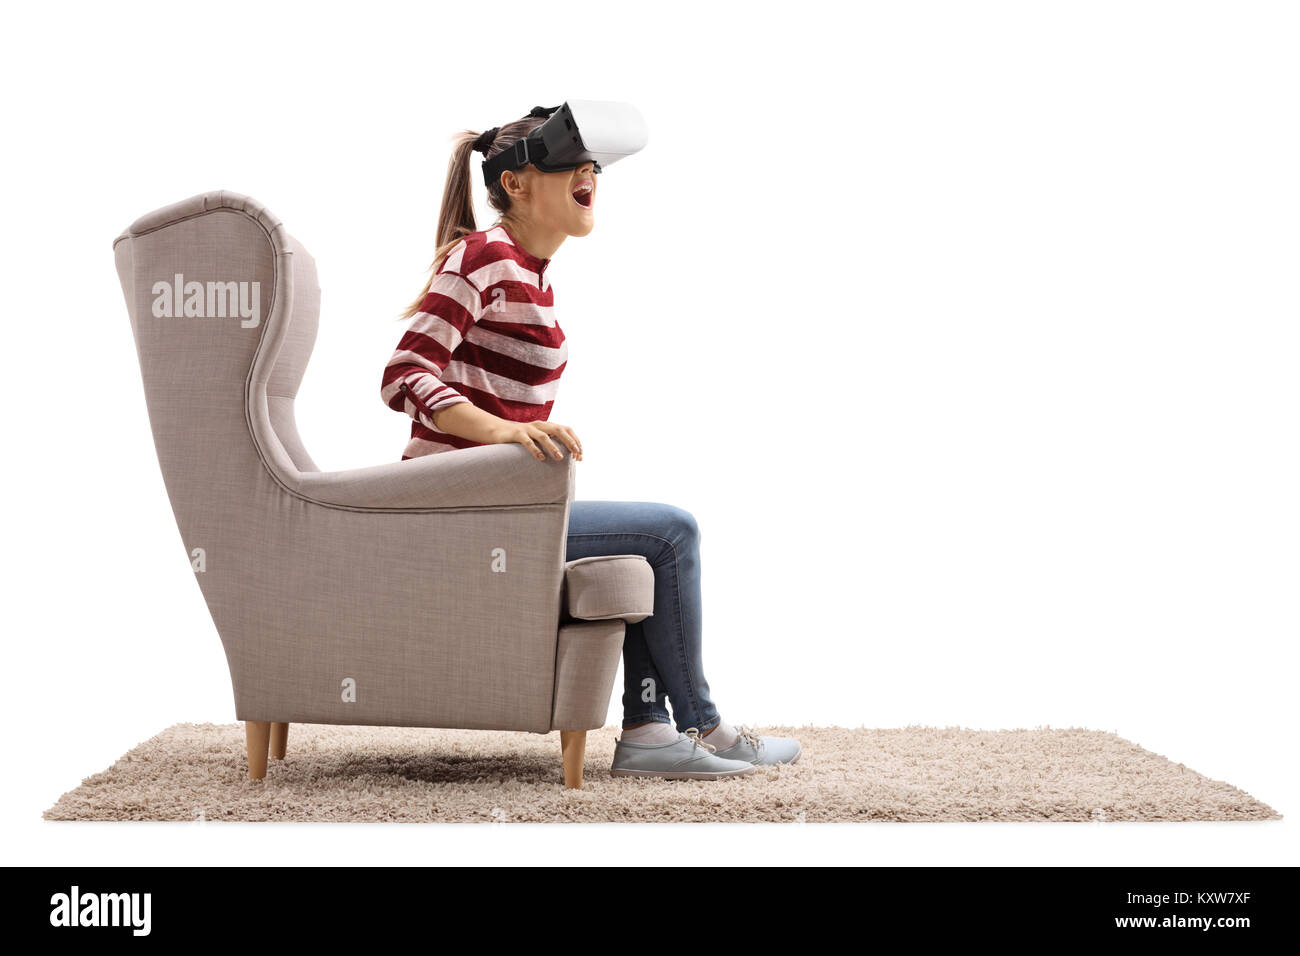 Surpris jeune femme assise dans un fauteuil à l'aide d'un casque de réalité virtuelle isolé sur fond blanc Banque D'Images